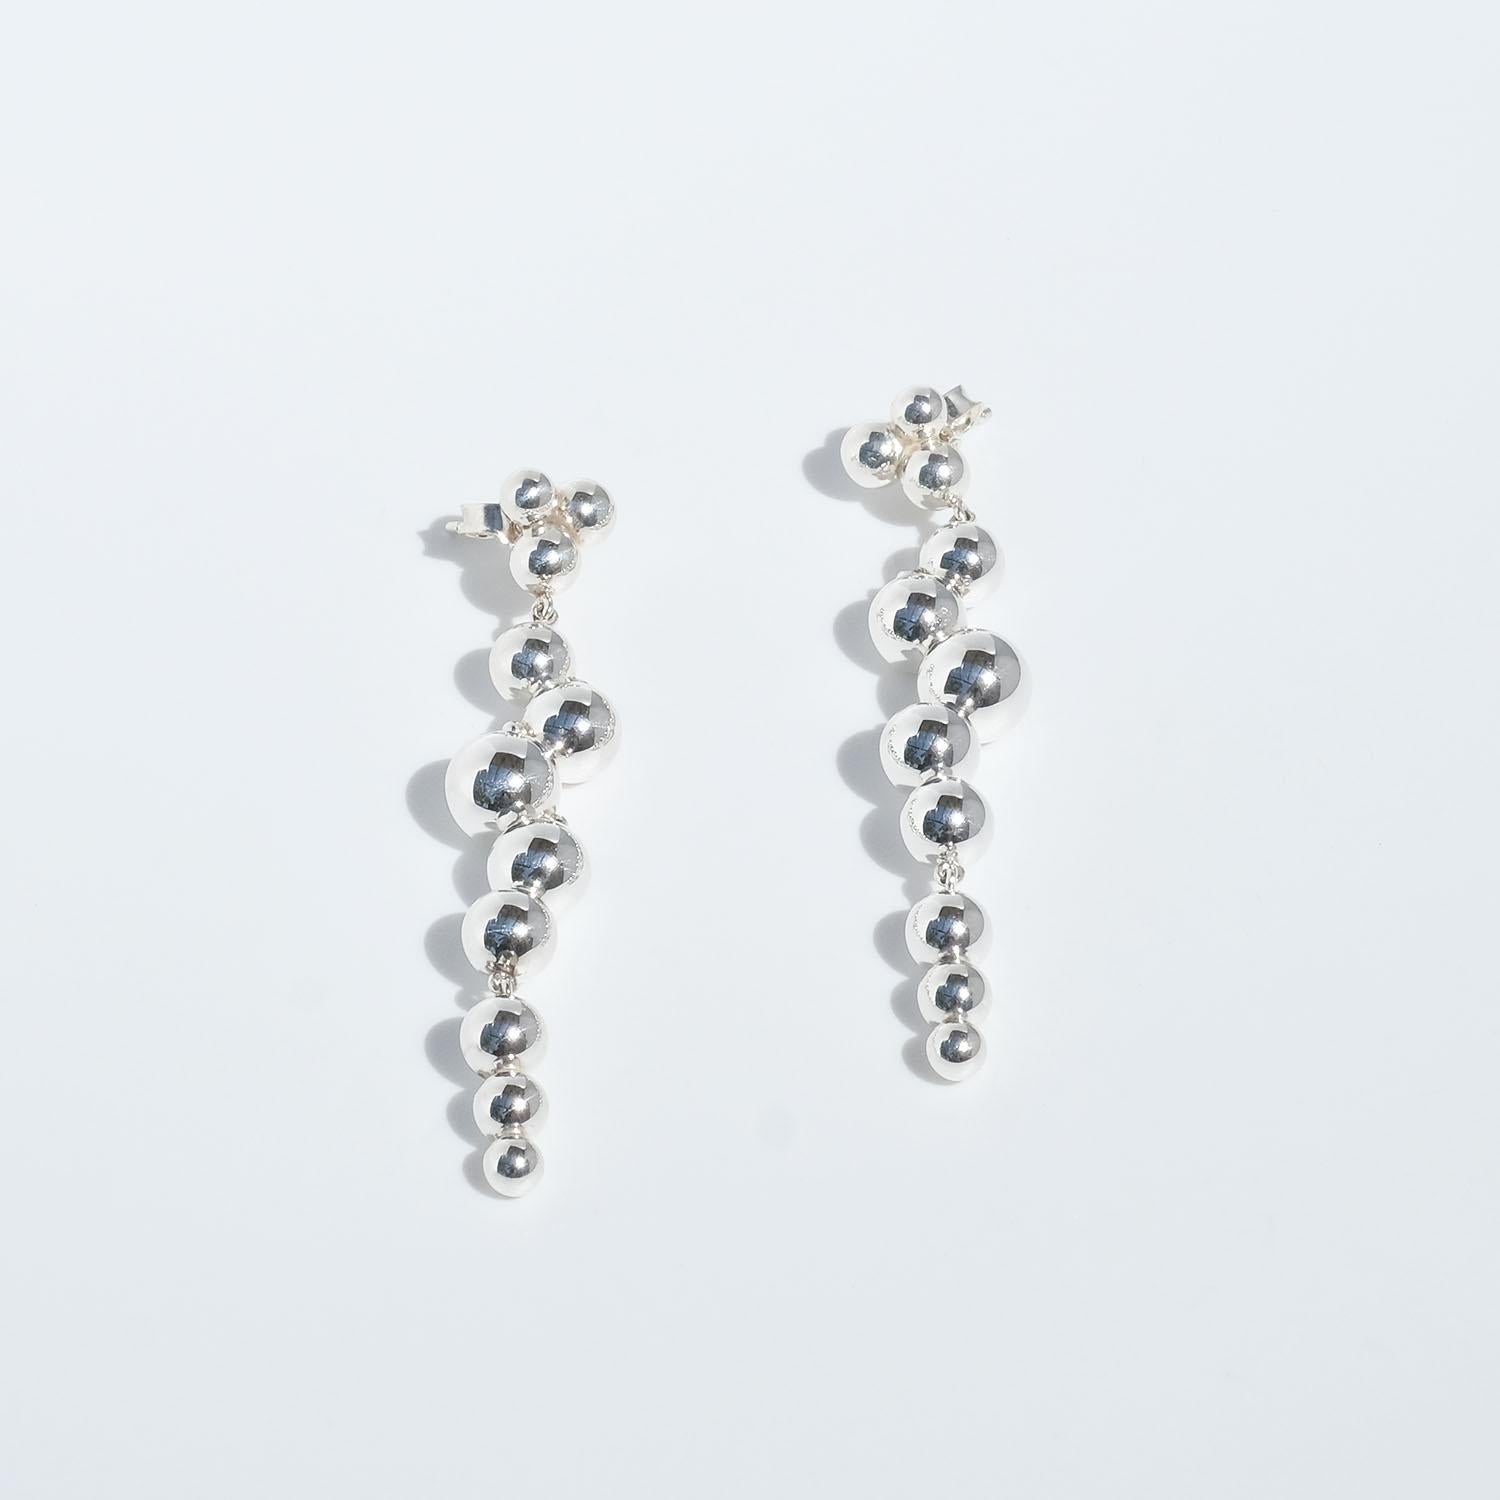 Silver Earrings by Georg Jensen, Moon Light Grapes 1